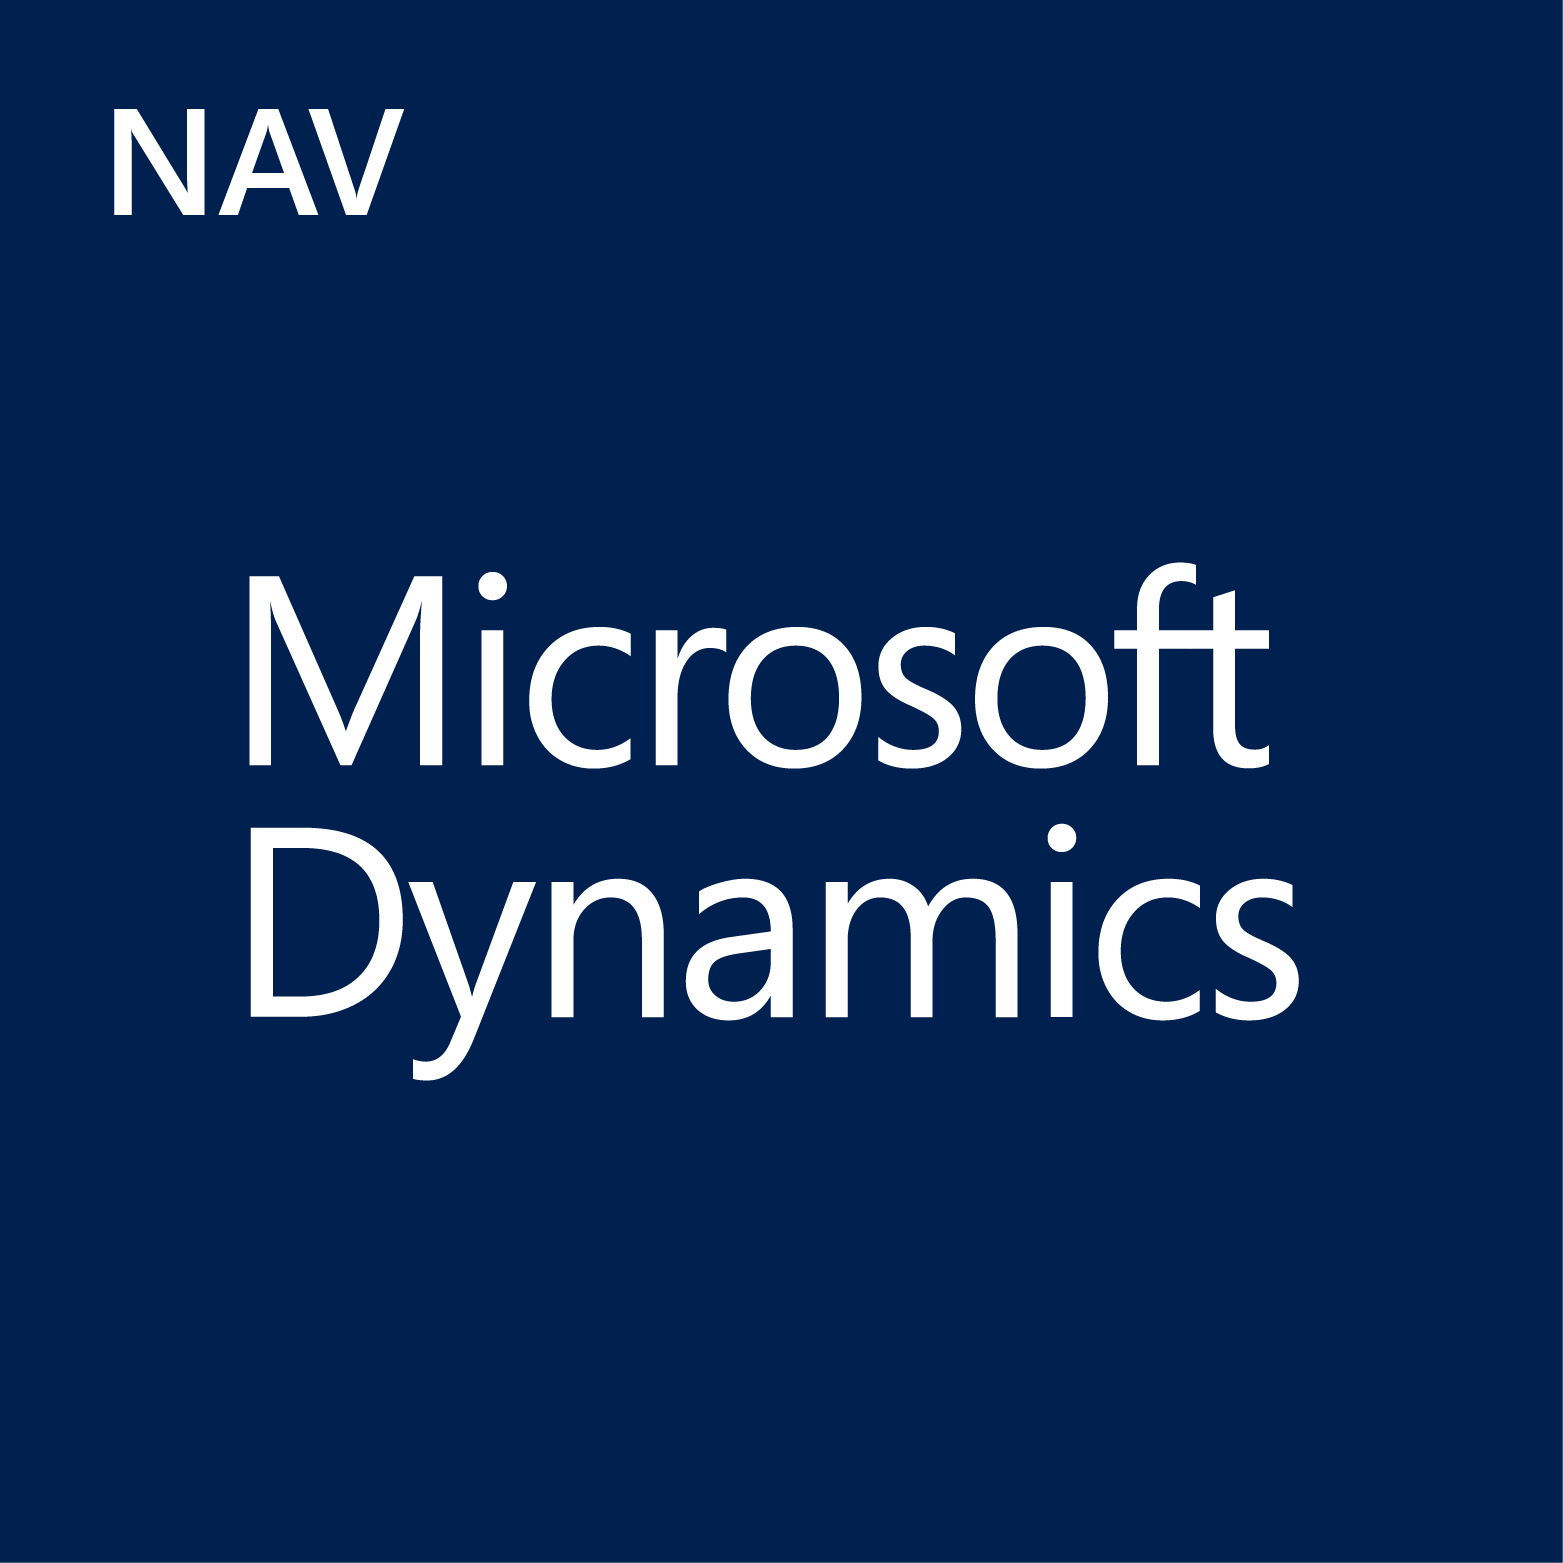 Microsoft Dynamcis NAV